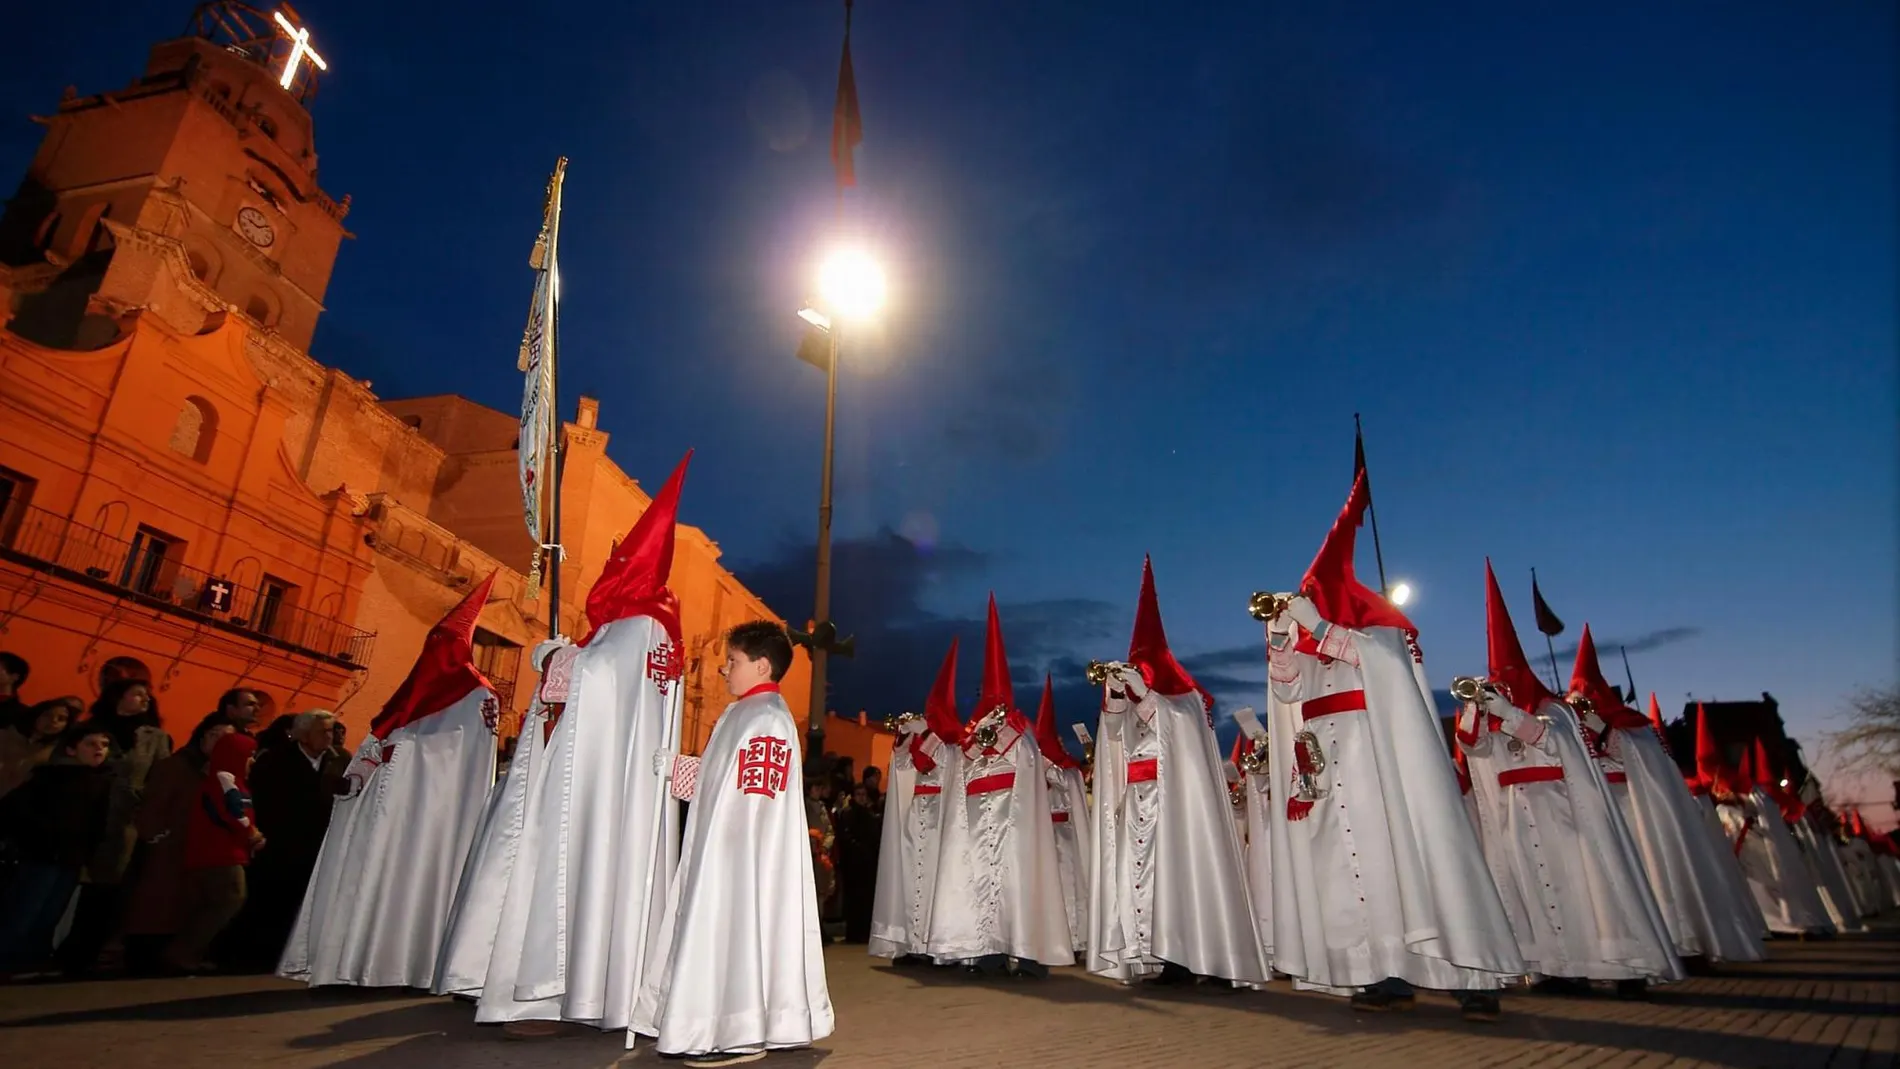 La Semana Santa vallisoletana se ha convertido en una manifestación cultural | Imagen cedida